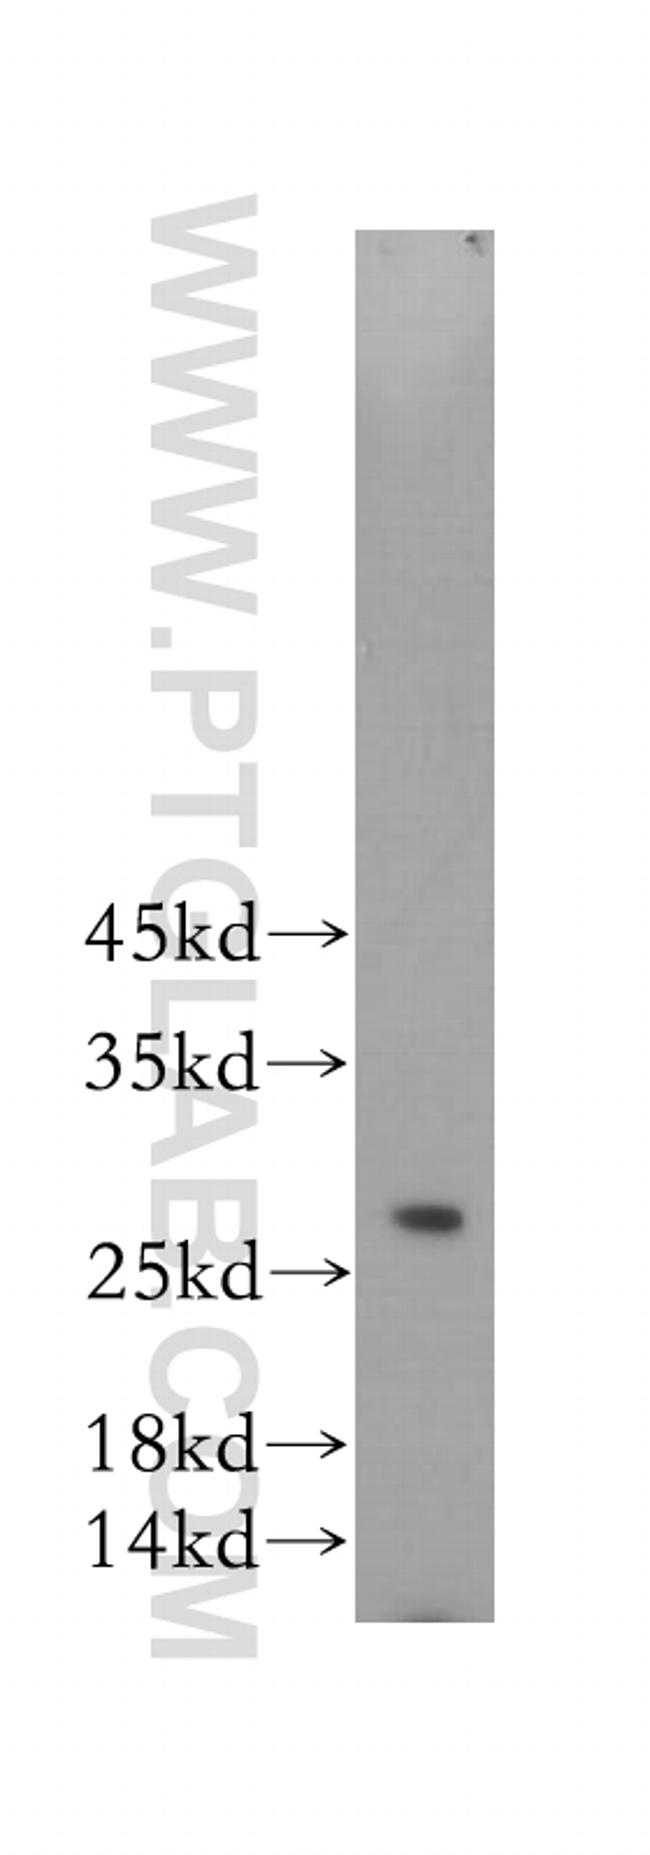 RAB27A Antibody in Western Blot (WB)